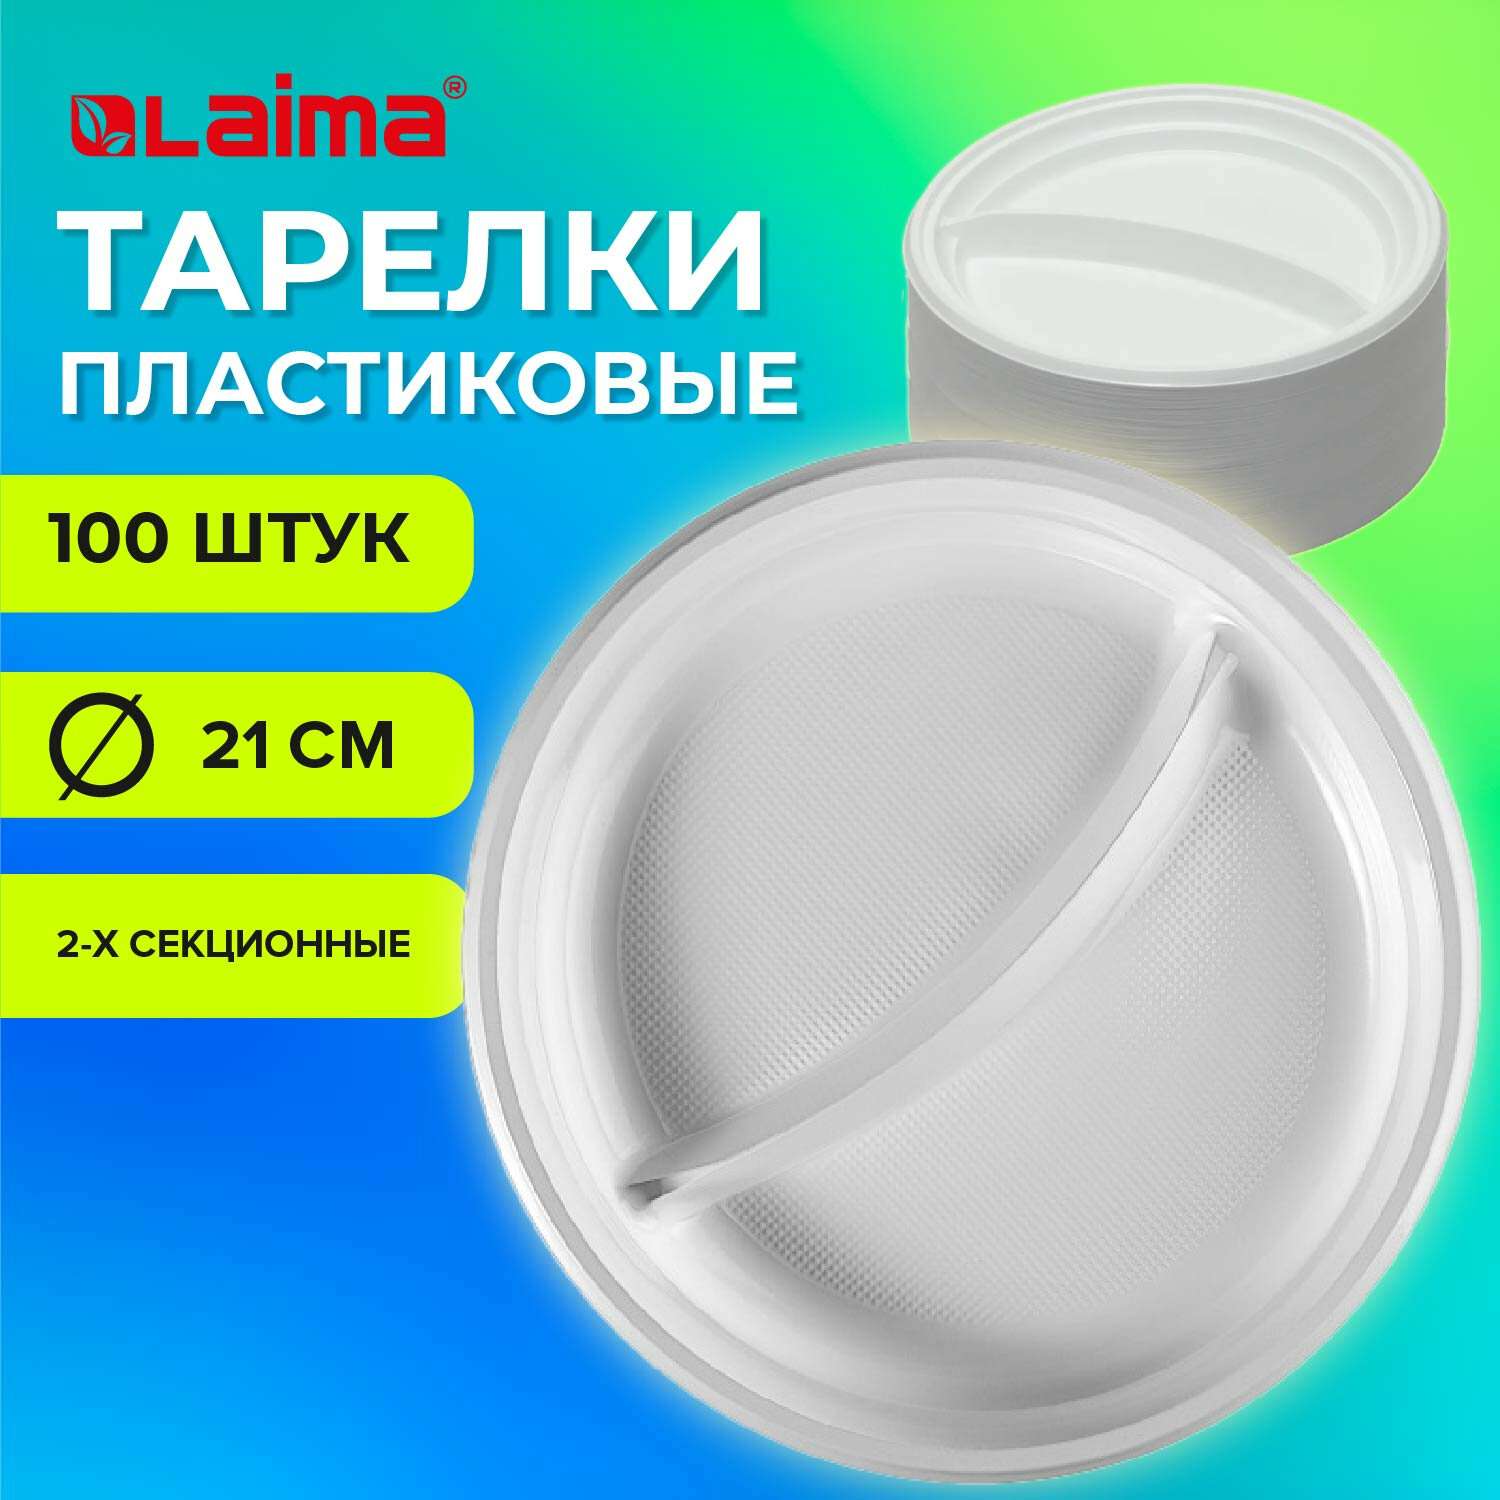 Одноразовые тарелки Лайма пластиковые плоские 2-х секционные 100 шт - фото 1